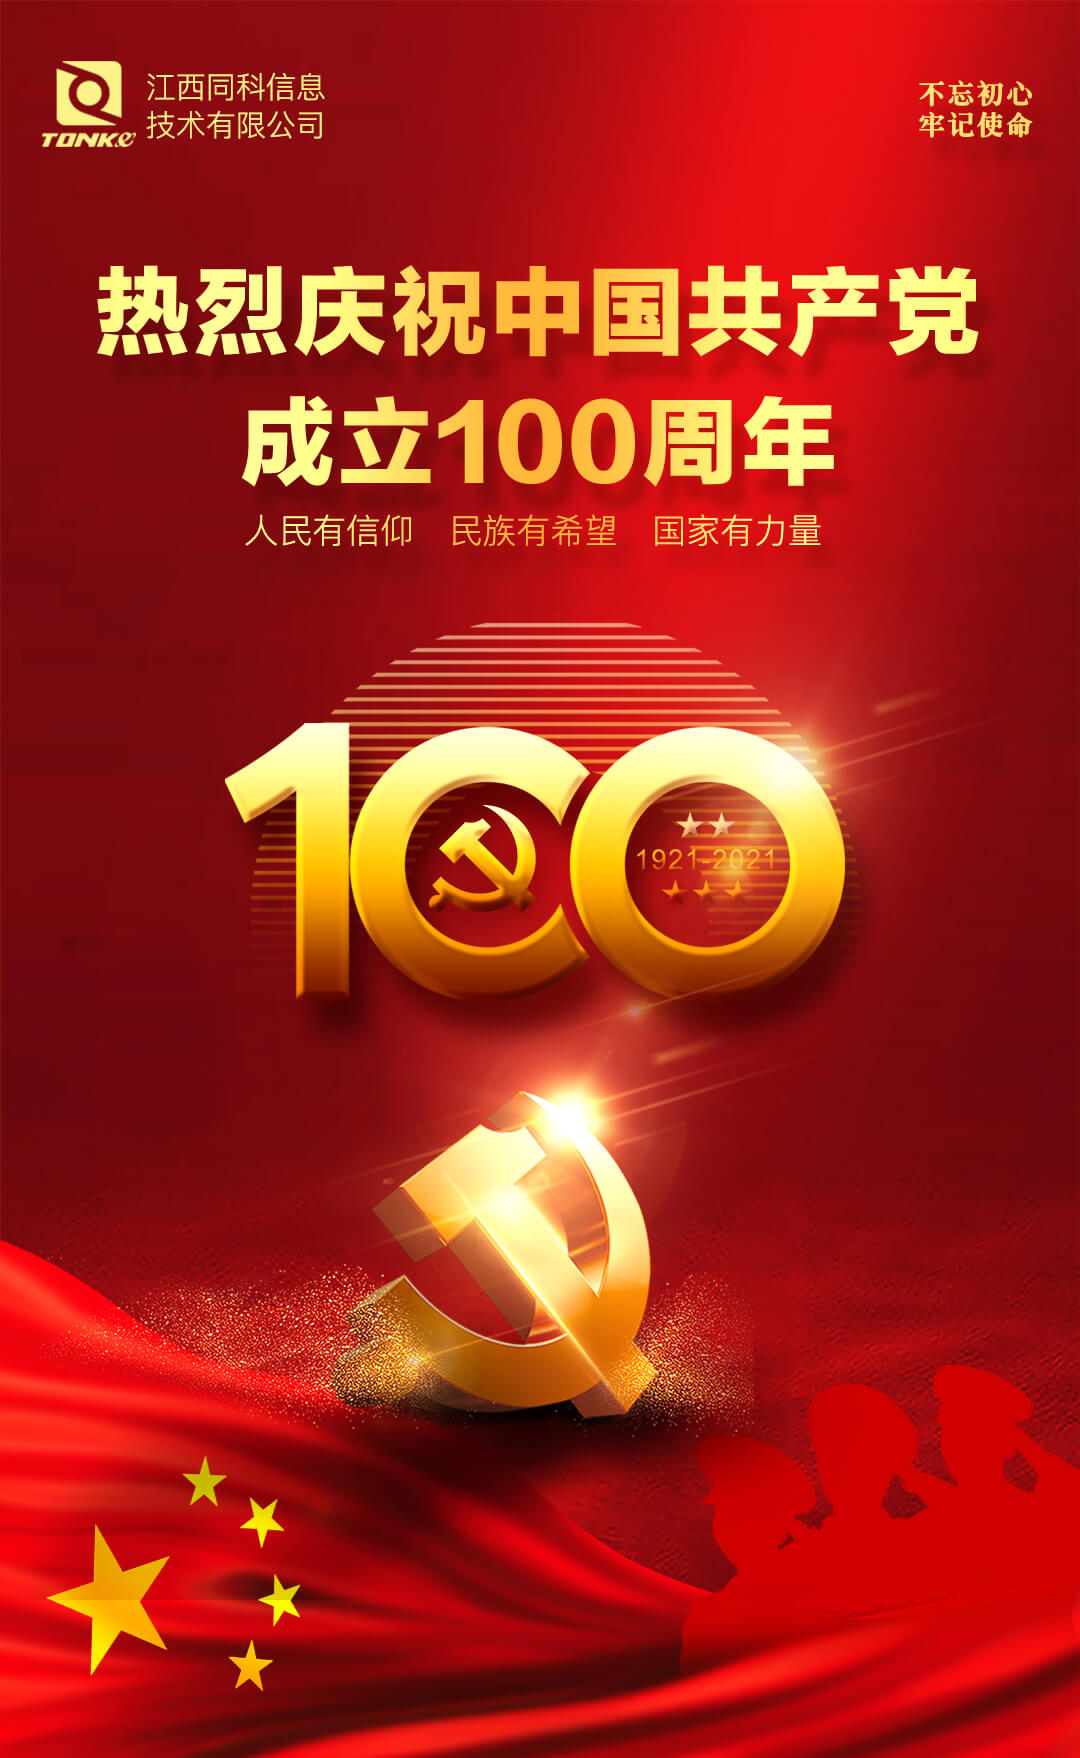 同科公司热烈庆祝中国共产党成立一百周年